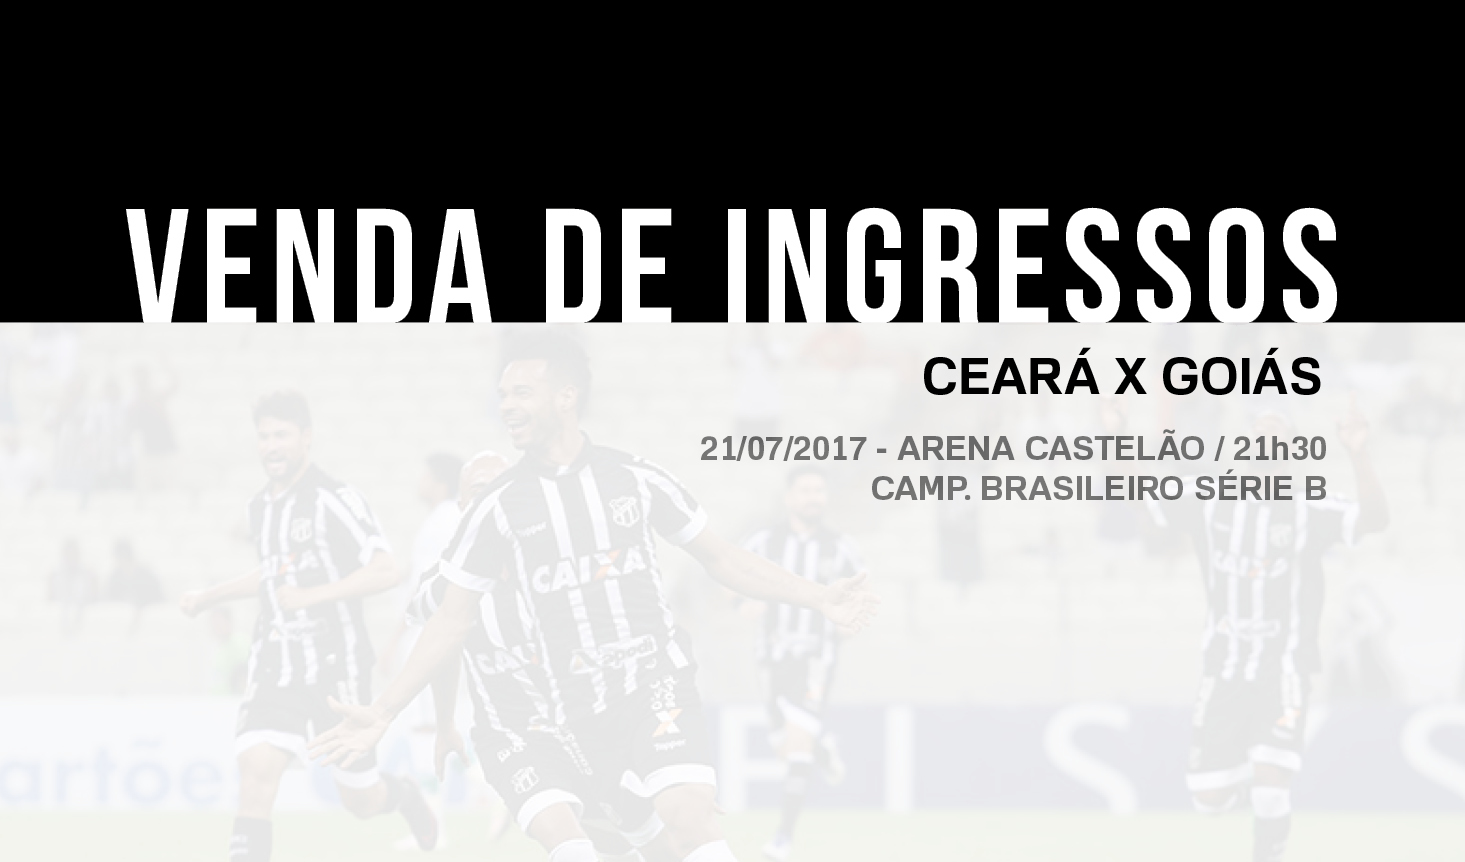 Partida entre Ceará x Goiás terá ingressos promocionais. Confira detalhes